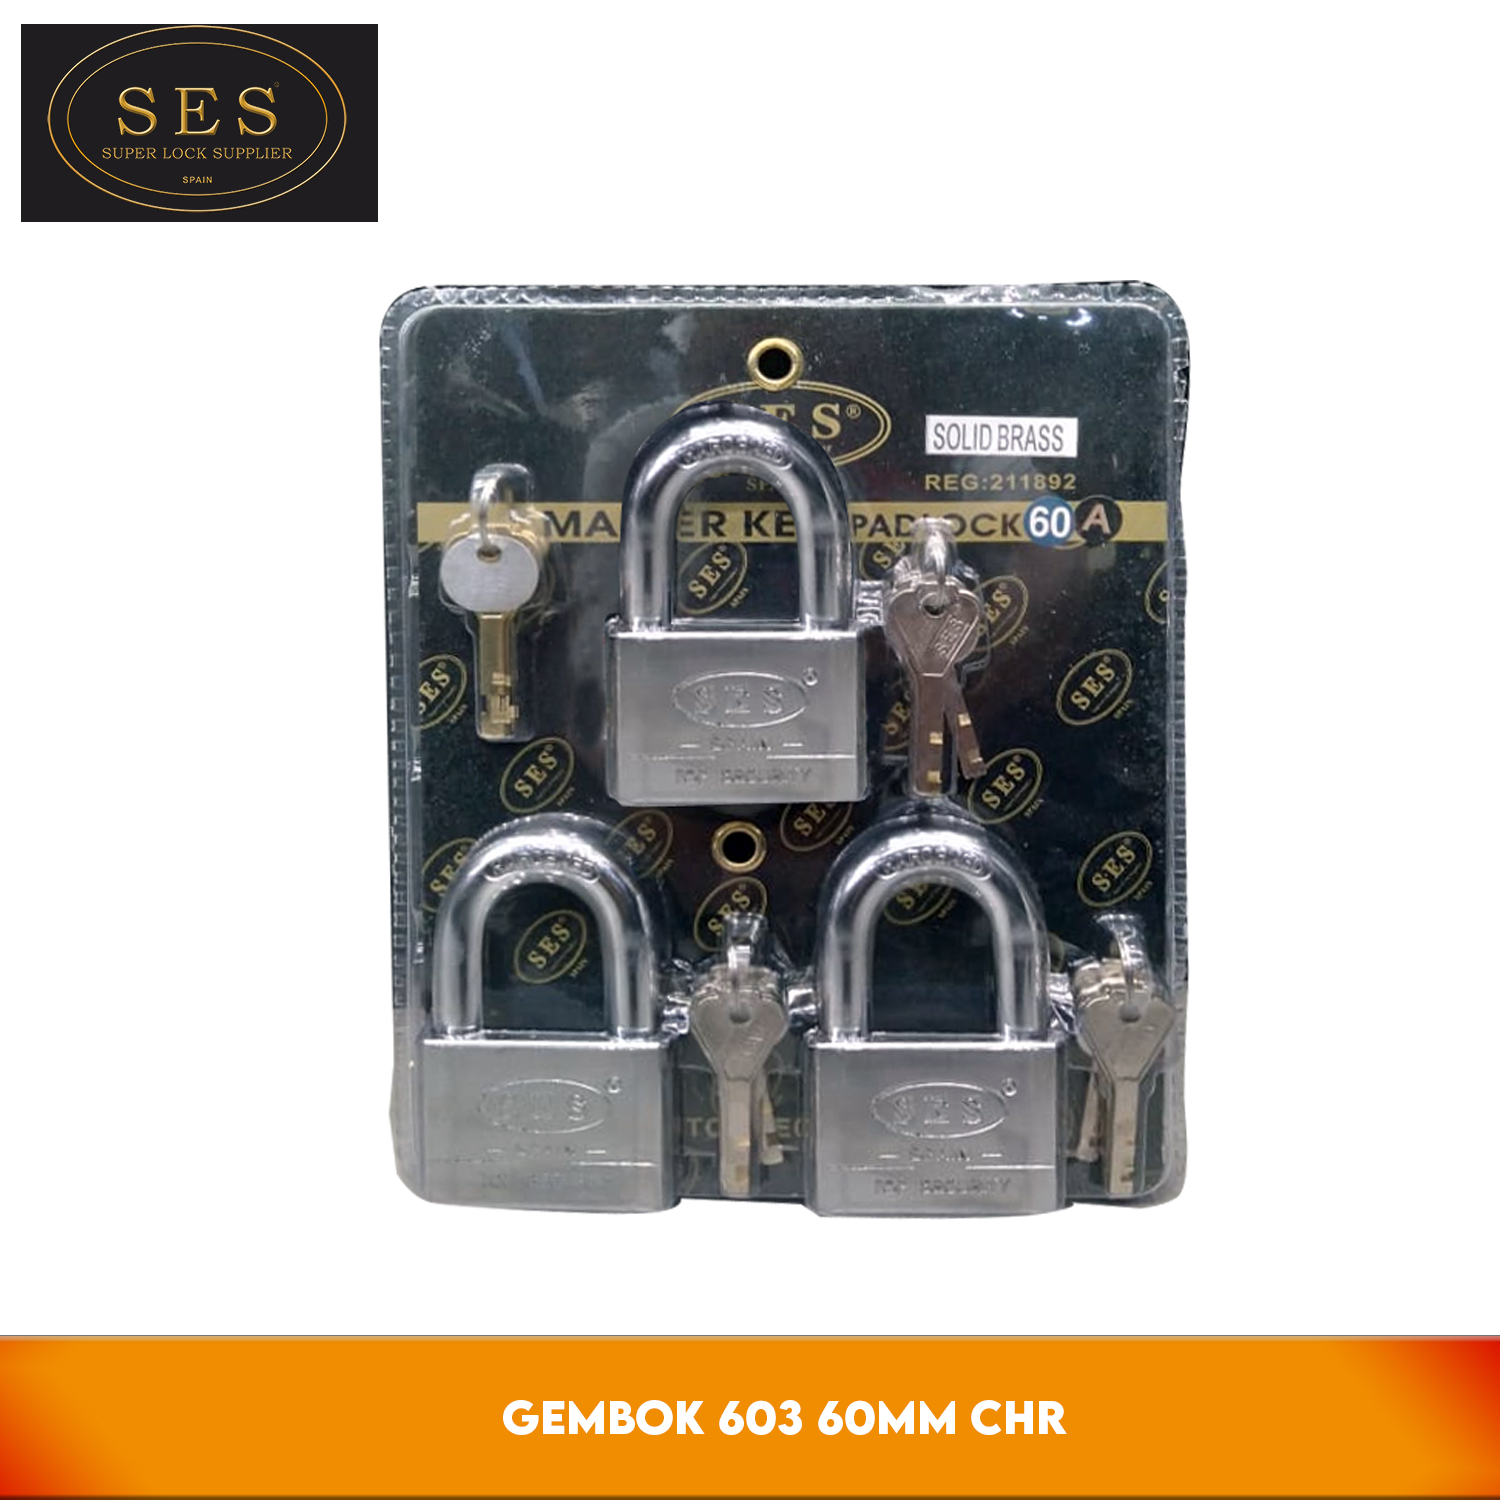 SES 603-60 MM CHR - Gembok 